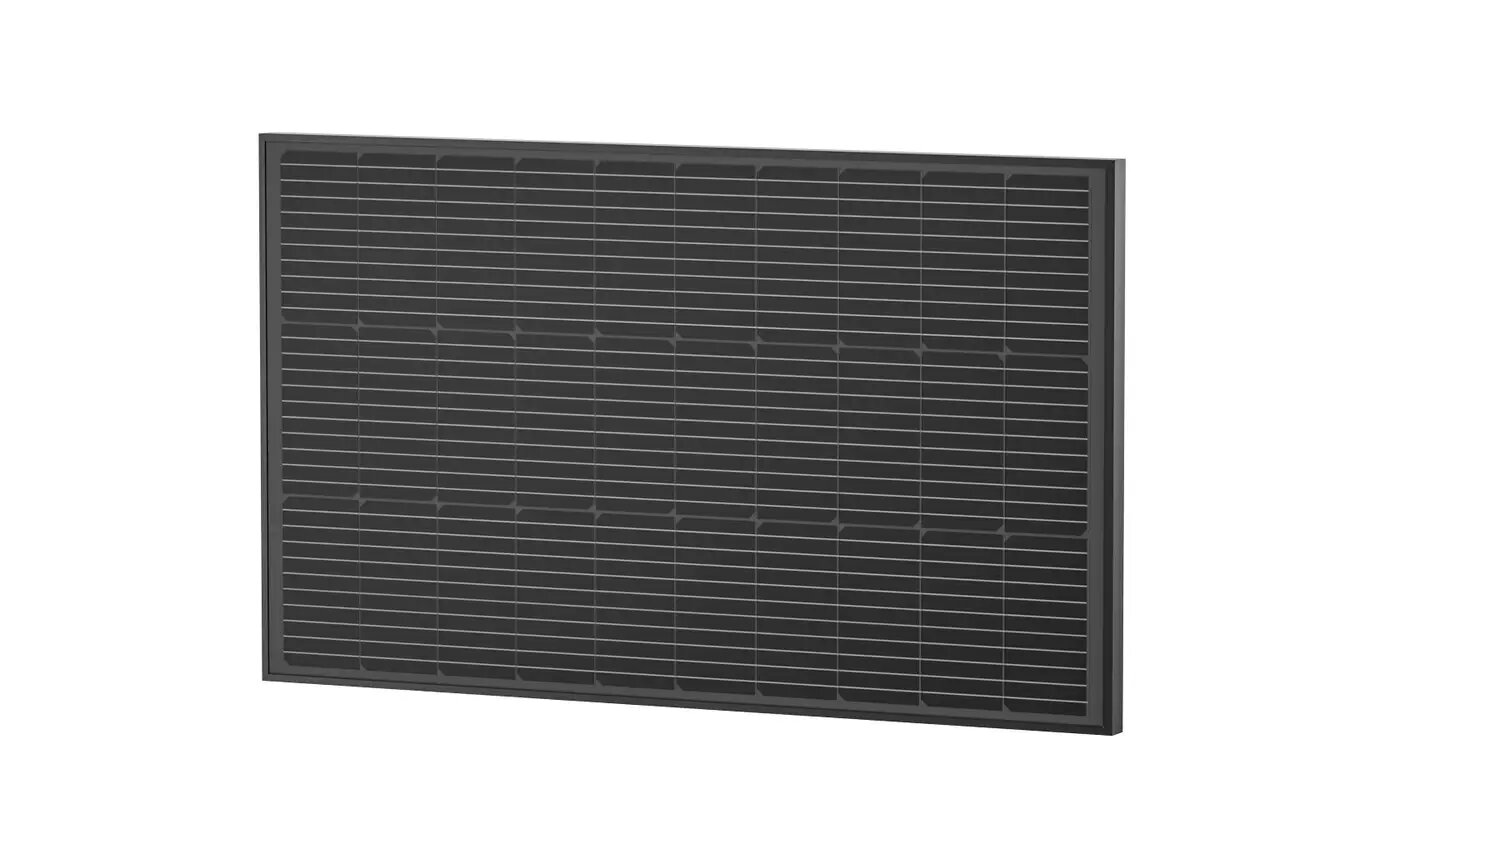   EcoFlow 100W Solar Panel 